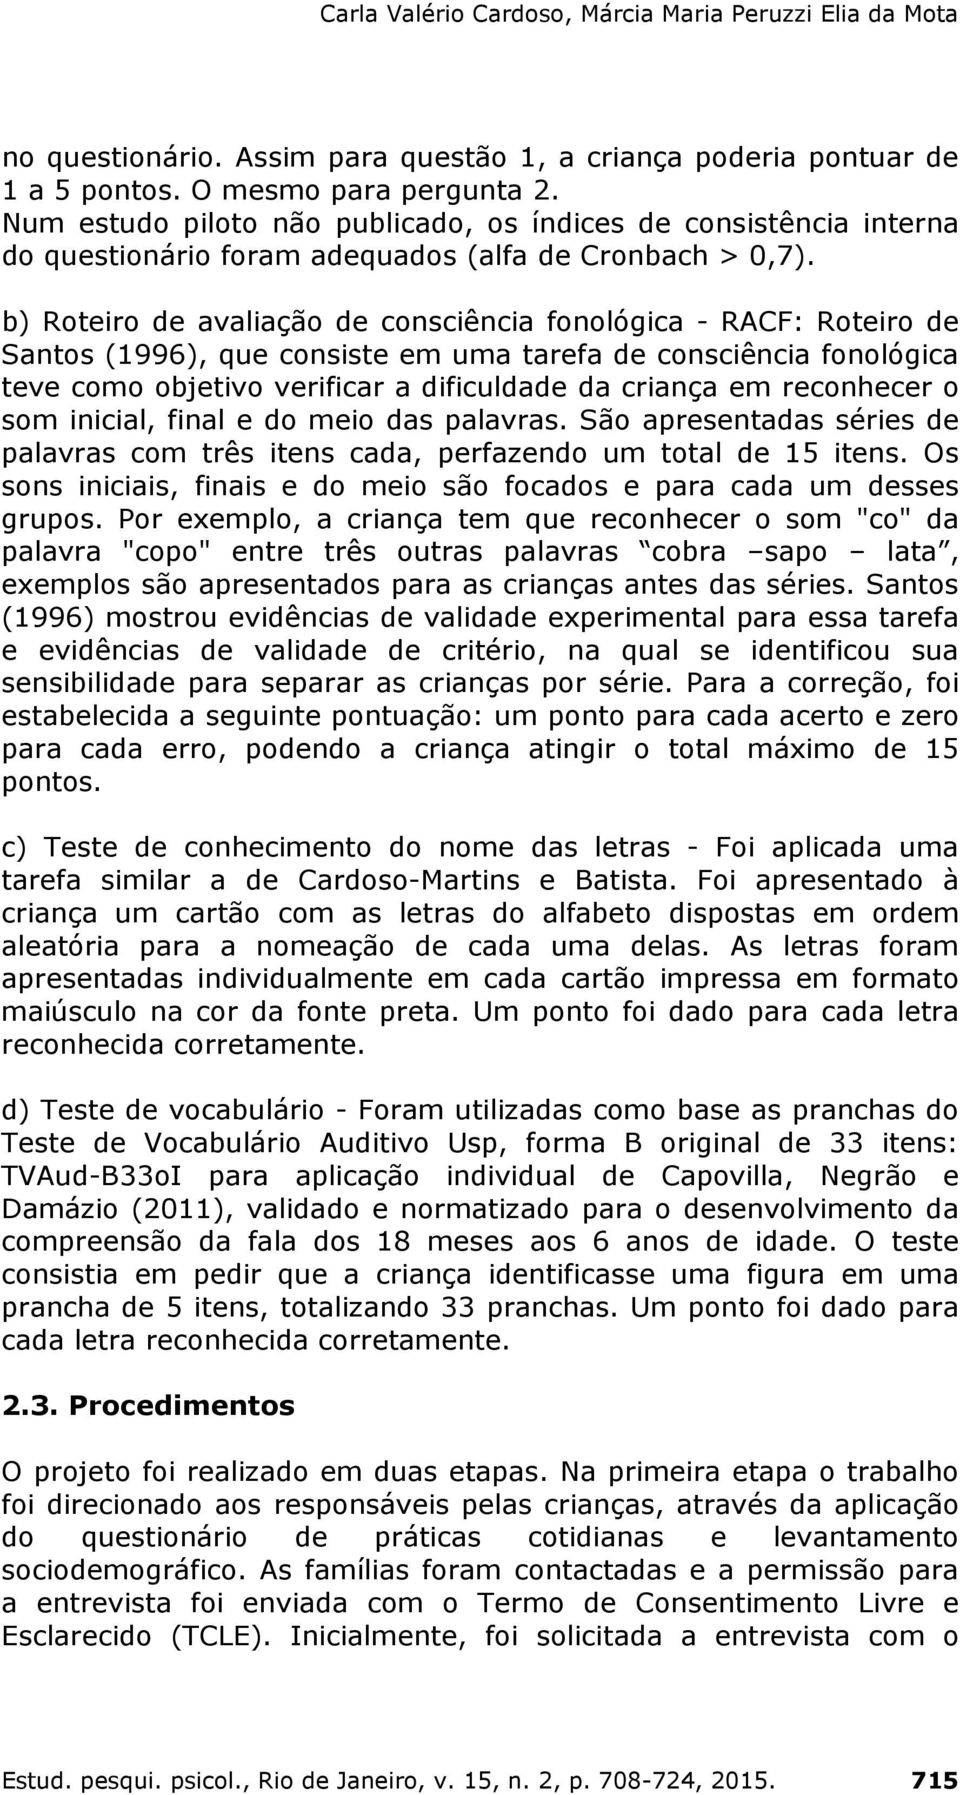 b) Roteiro de avaliação de consciência fonológica - RACF: Roteiro de Santos (1996), que consiste em uma tarefa de consciência fonológica teve como objetivo verificar a dificuldade da criança em